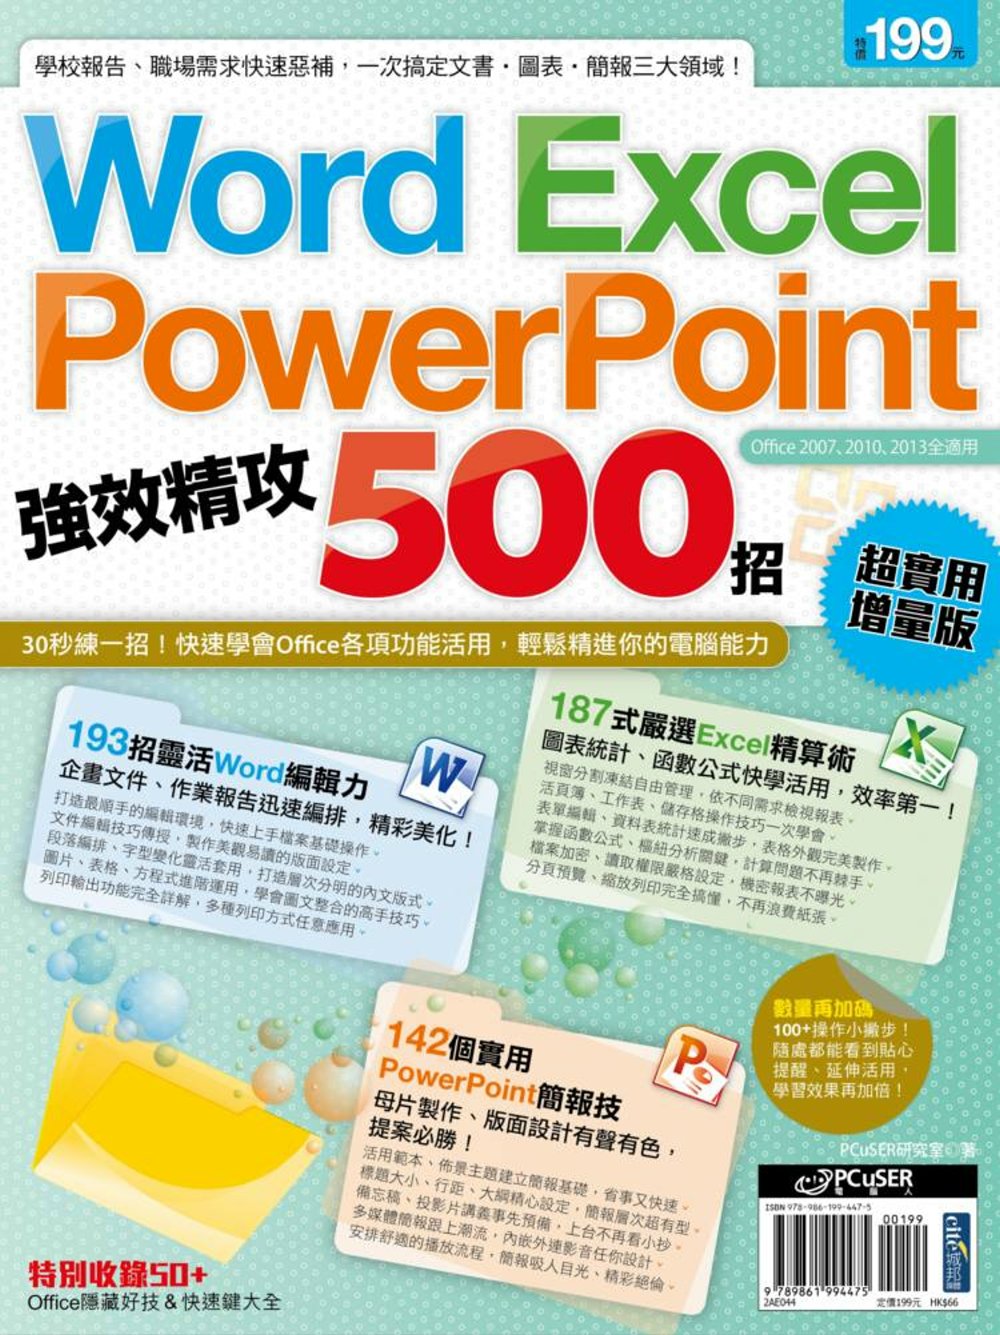 Word、Excel、PowerPoint 強效精攻500招...